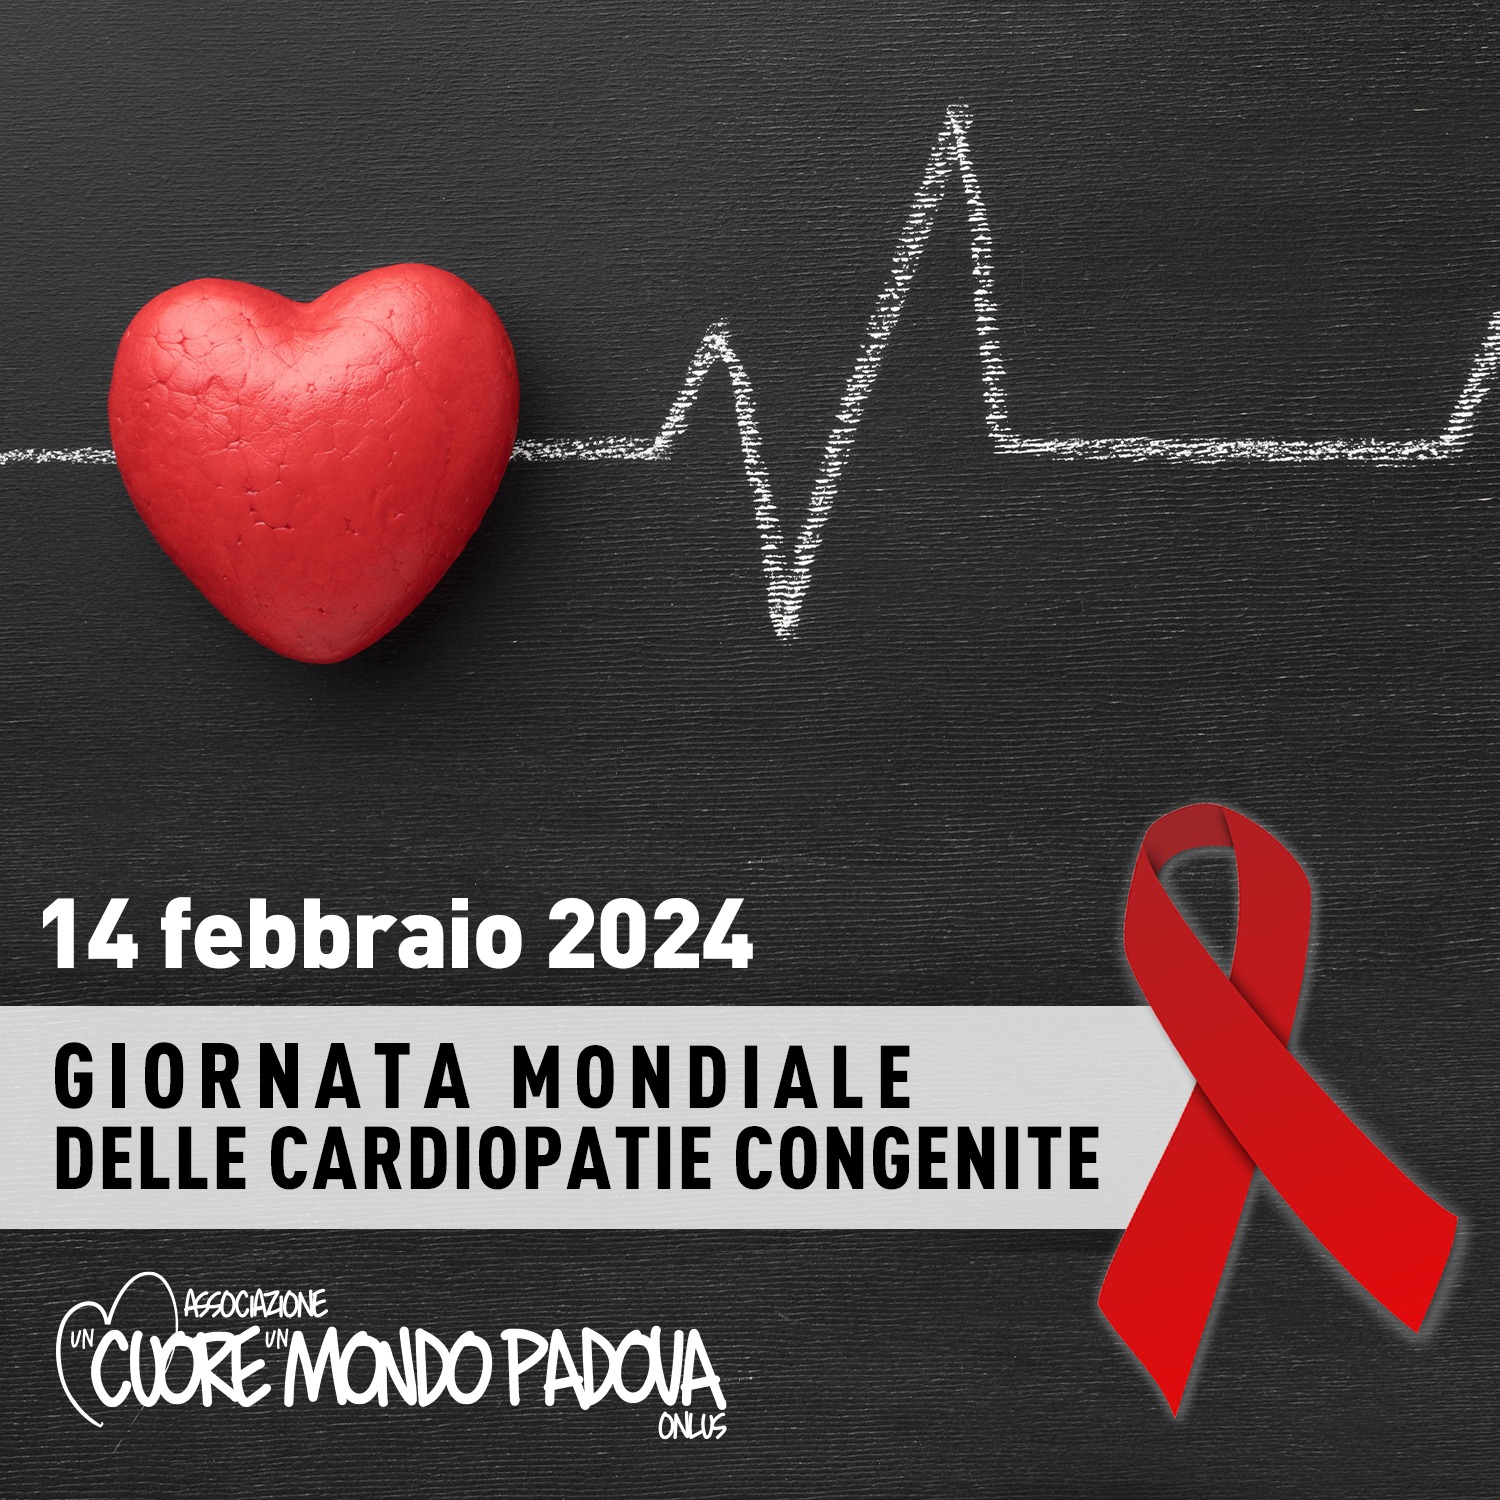 14 febbraio 2024: giornata mondiale delle cardiopatie congenite